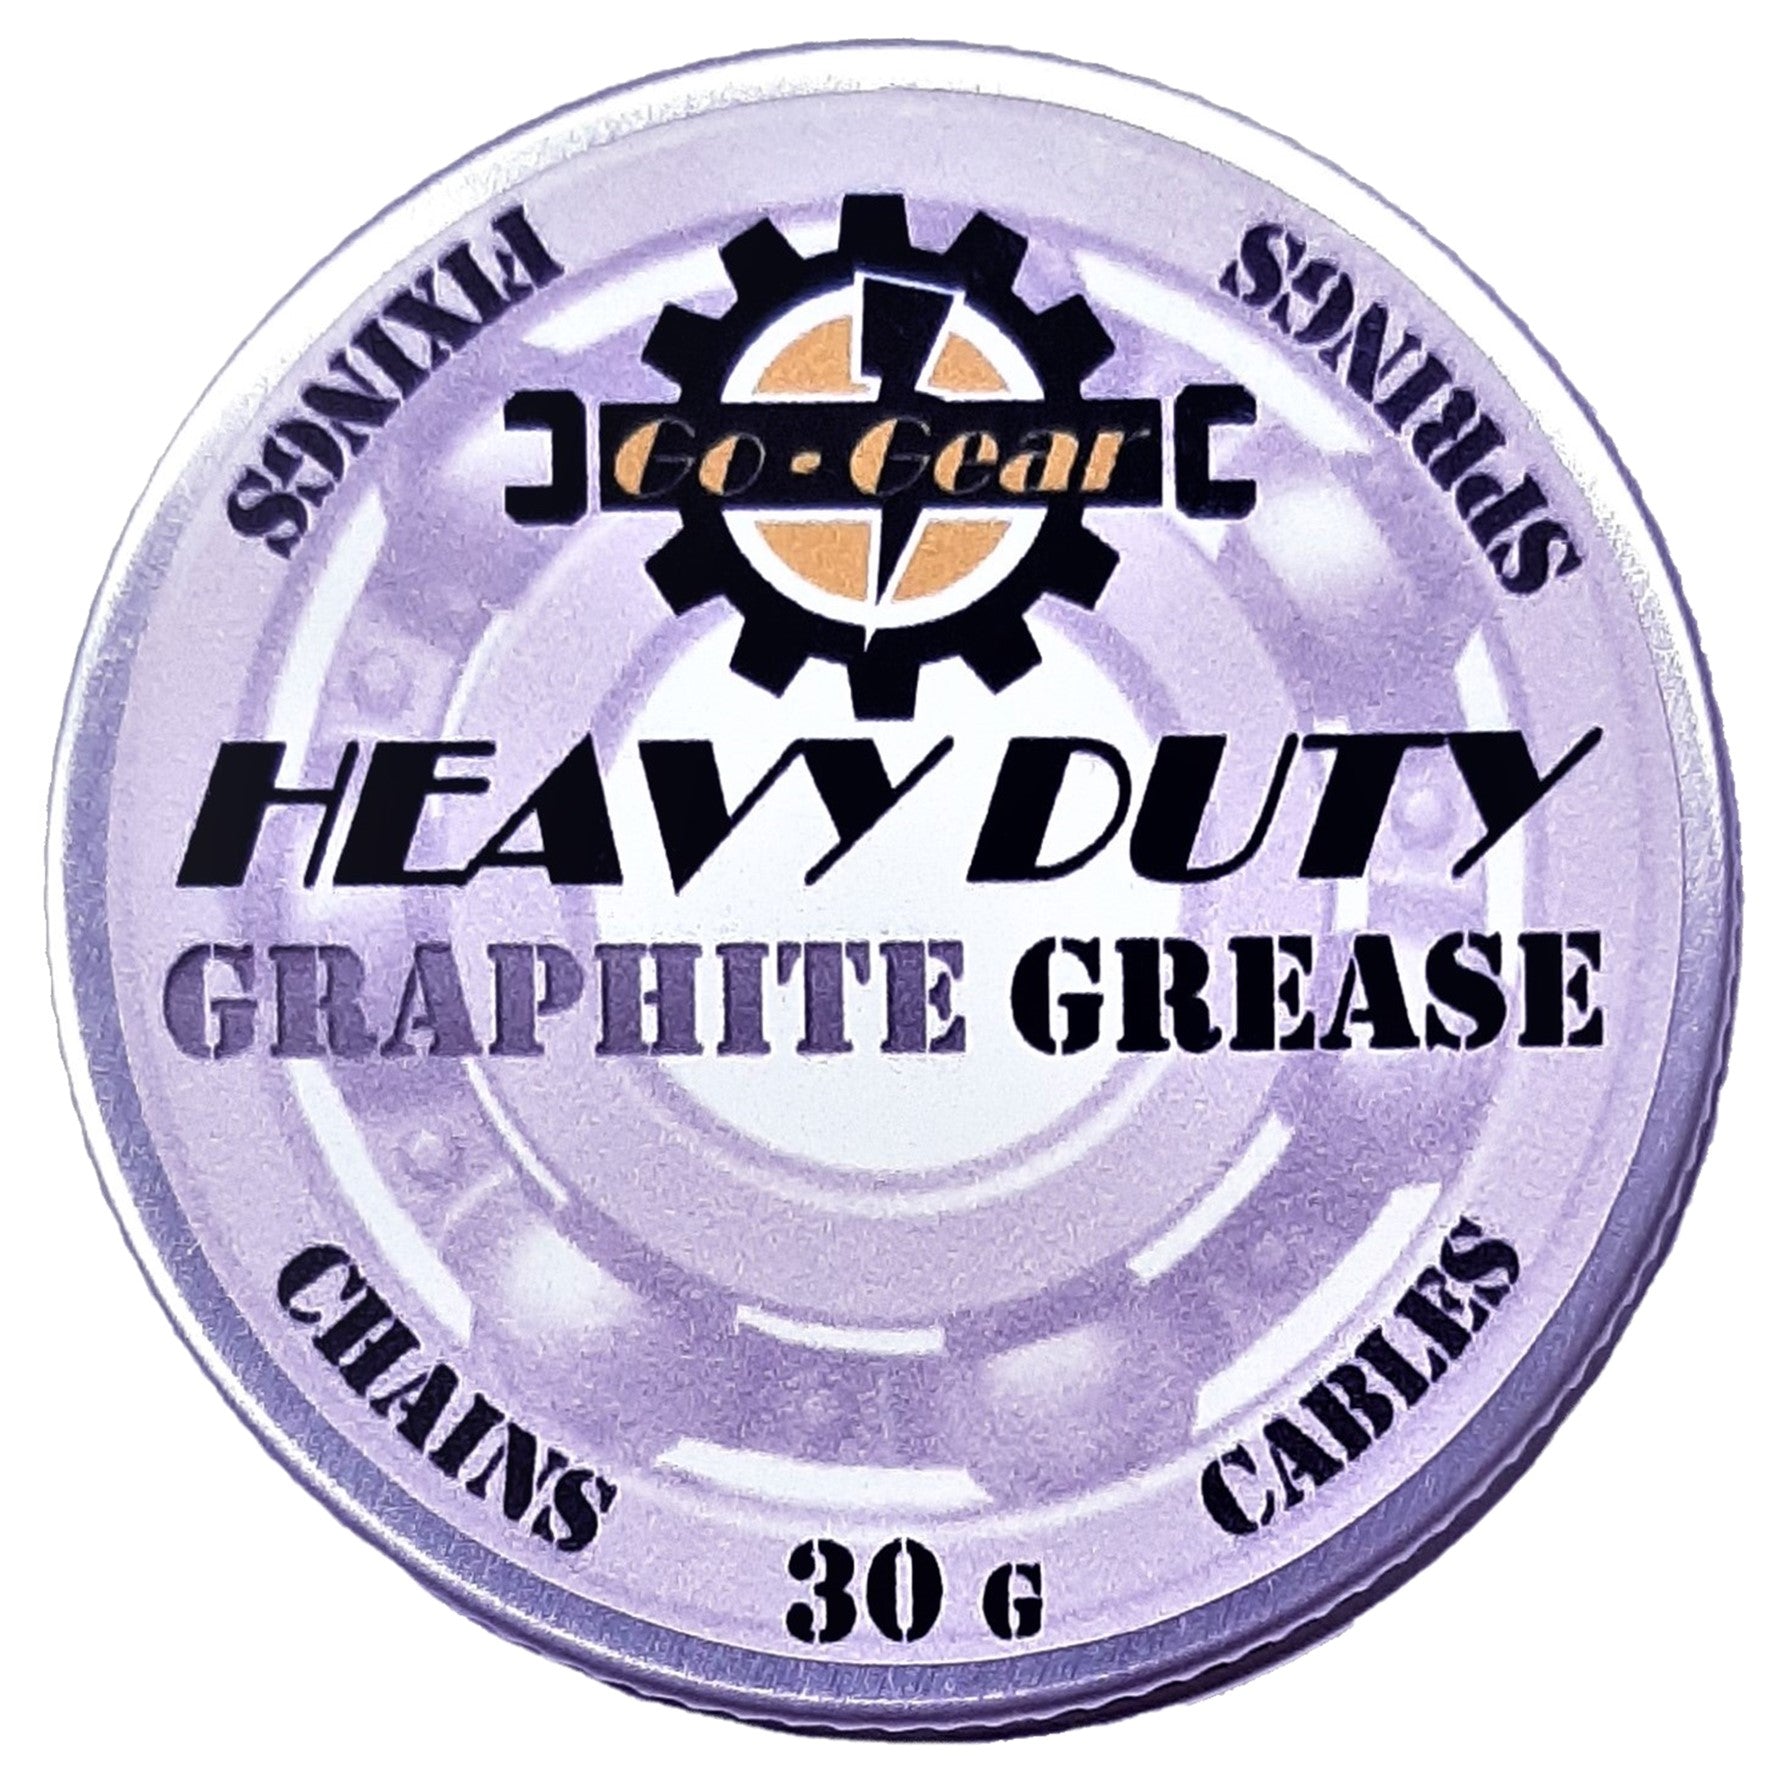 Graphite Grease Heavy Duty Multi Purpose Metal Lubricant 30g